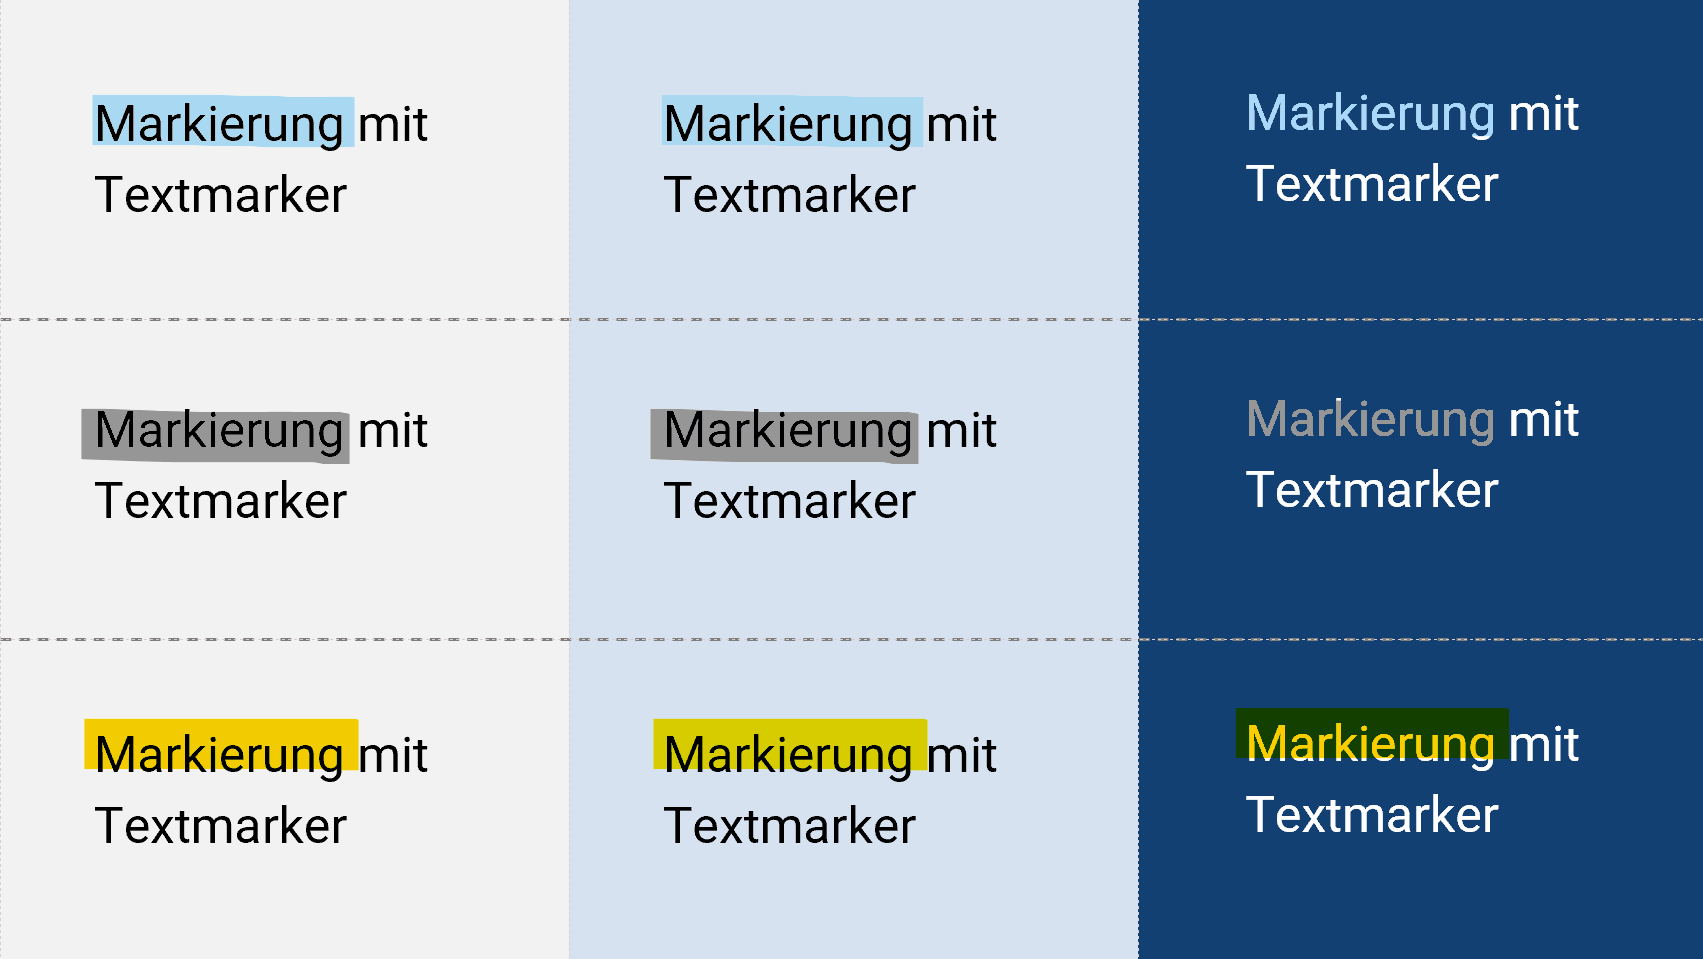 Tabelle mit dem immer gleichen Text in 3 mal 3 Feldern. In den Zeilen unterscheidet sich jeweils die Markierungsfarbe und in den Spalten die Farbe des Hintergrunds.